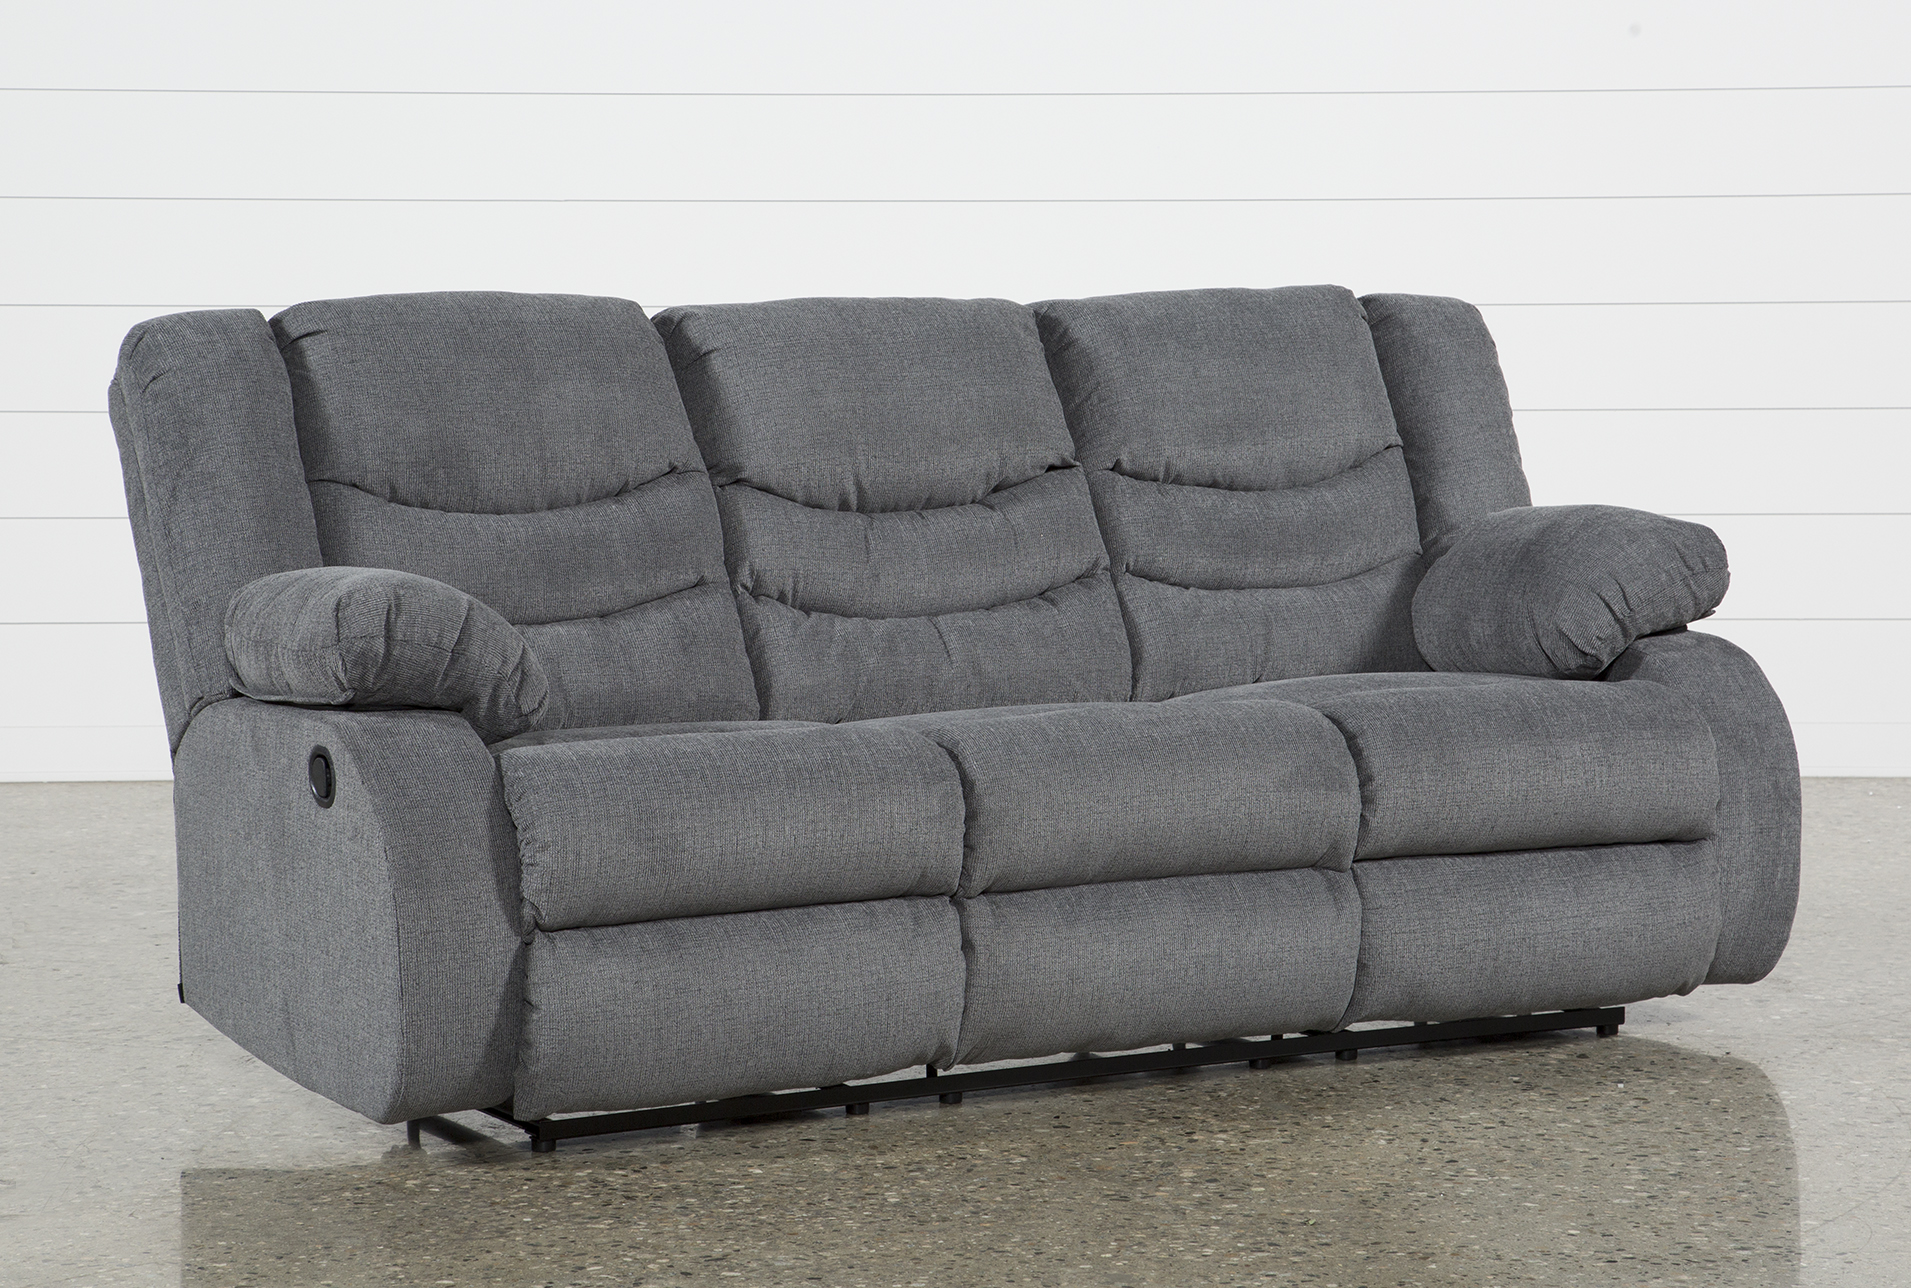 Sofa recliner haines grey reclining sofa VQRTLOX